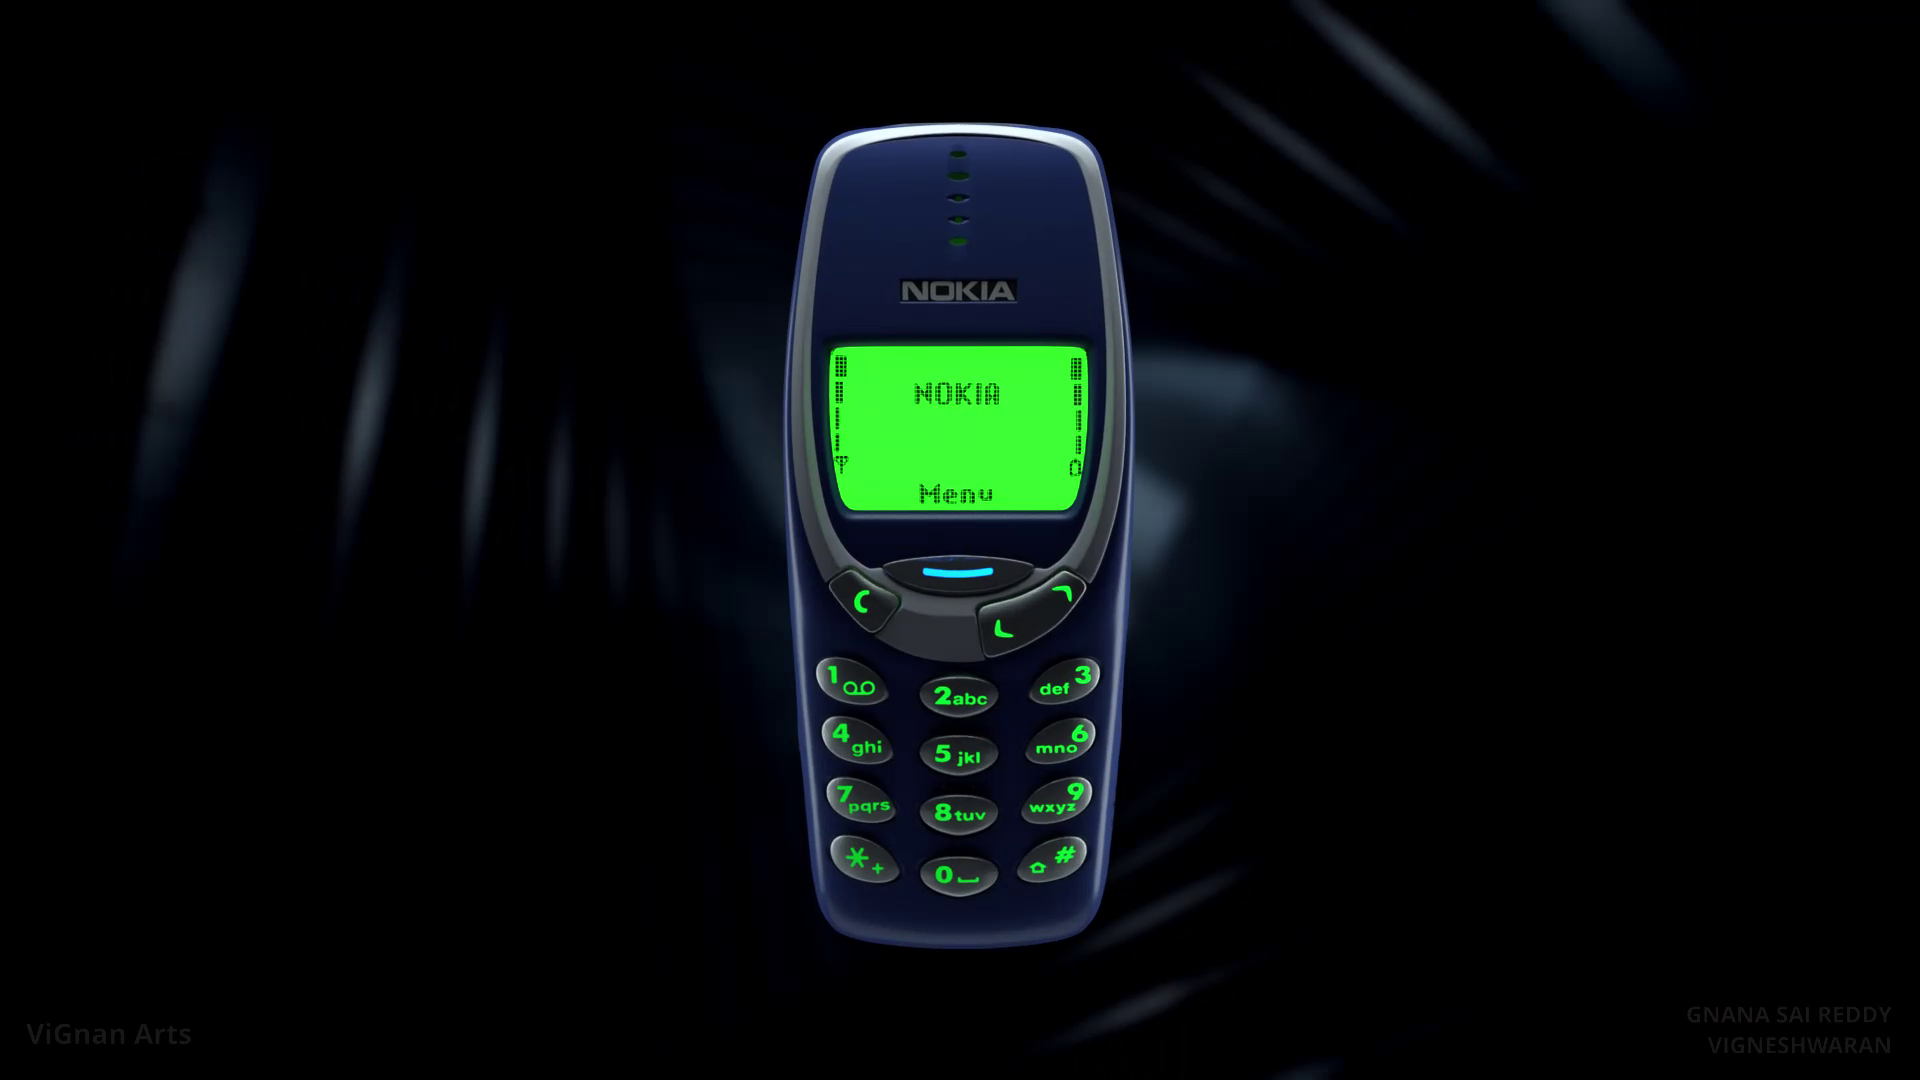 Bạn có biết rằng Nokia 3310 đã trở lại với phiên bản mới toanh? Hãy điểm qua các hình ảnh nền đầy tinh tế cho Nokia 3310 mà chắc chắn sẽ khiến bạn mê mẩn. Đừng bỏ lỡ cơ hội thưởng thức vẻ đẹp của Nokia 3310, nhấn play ngay!